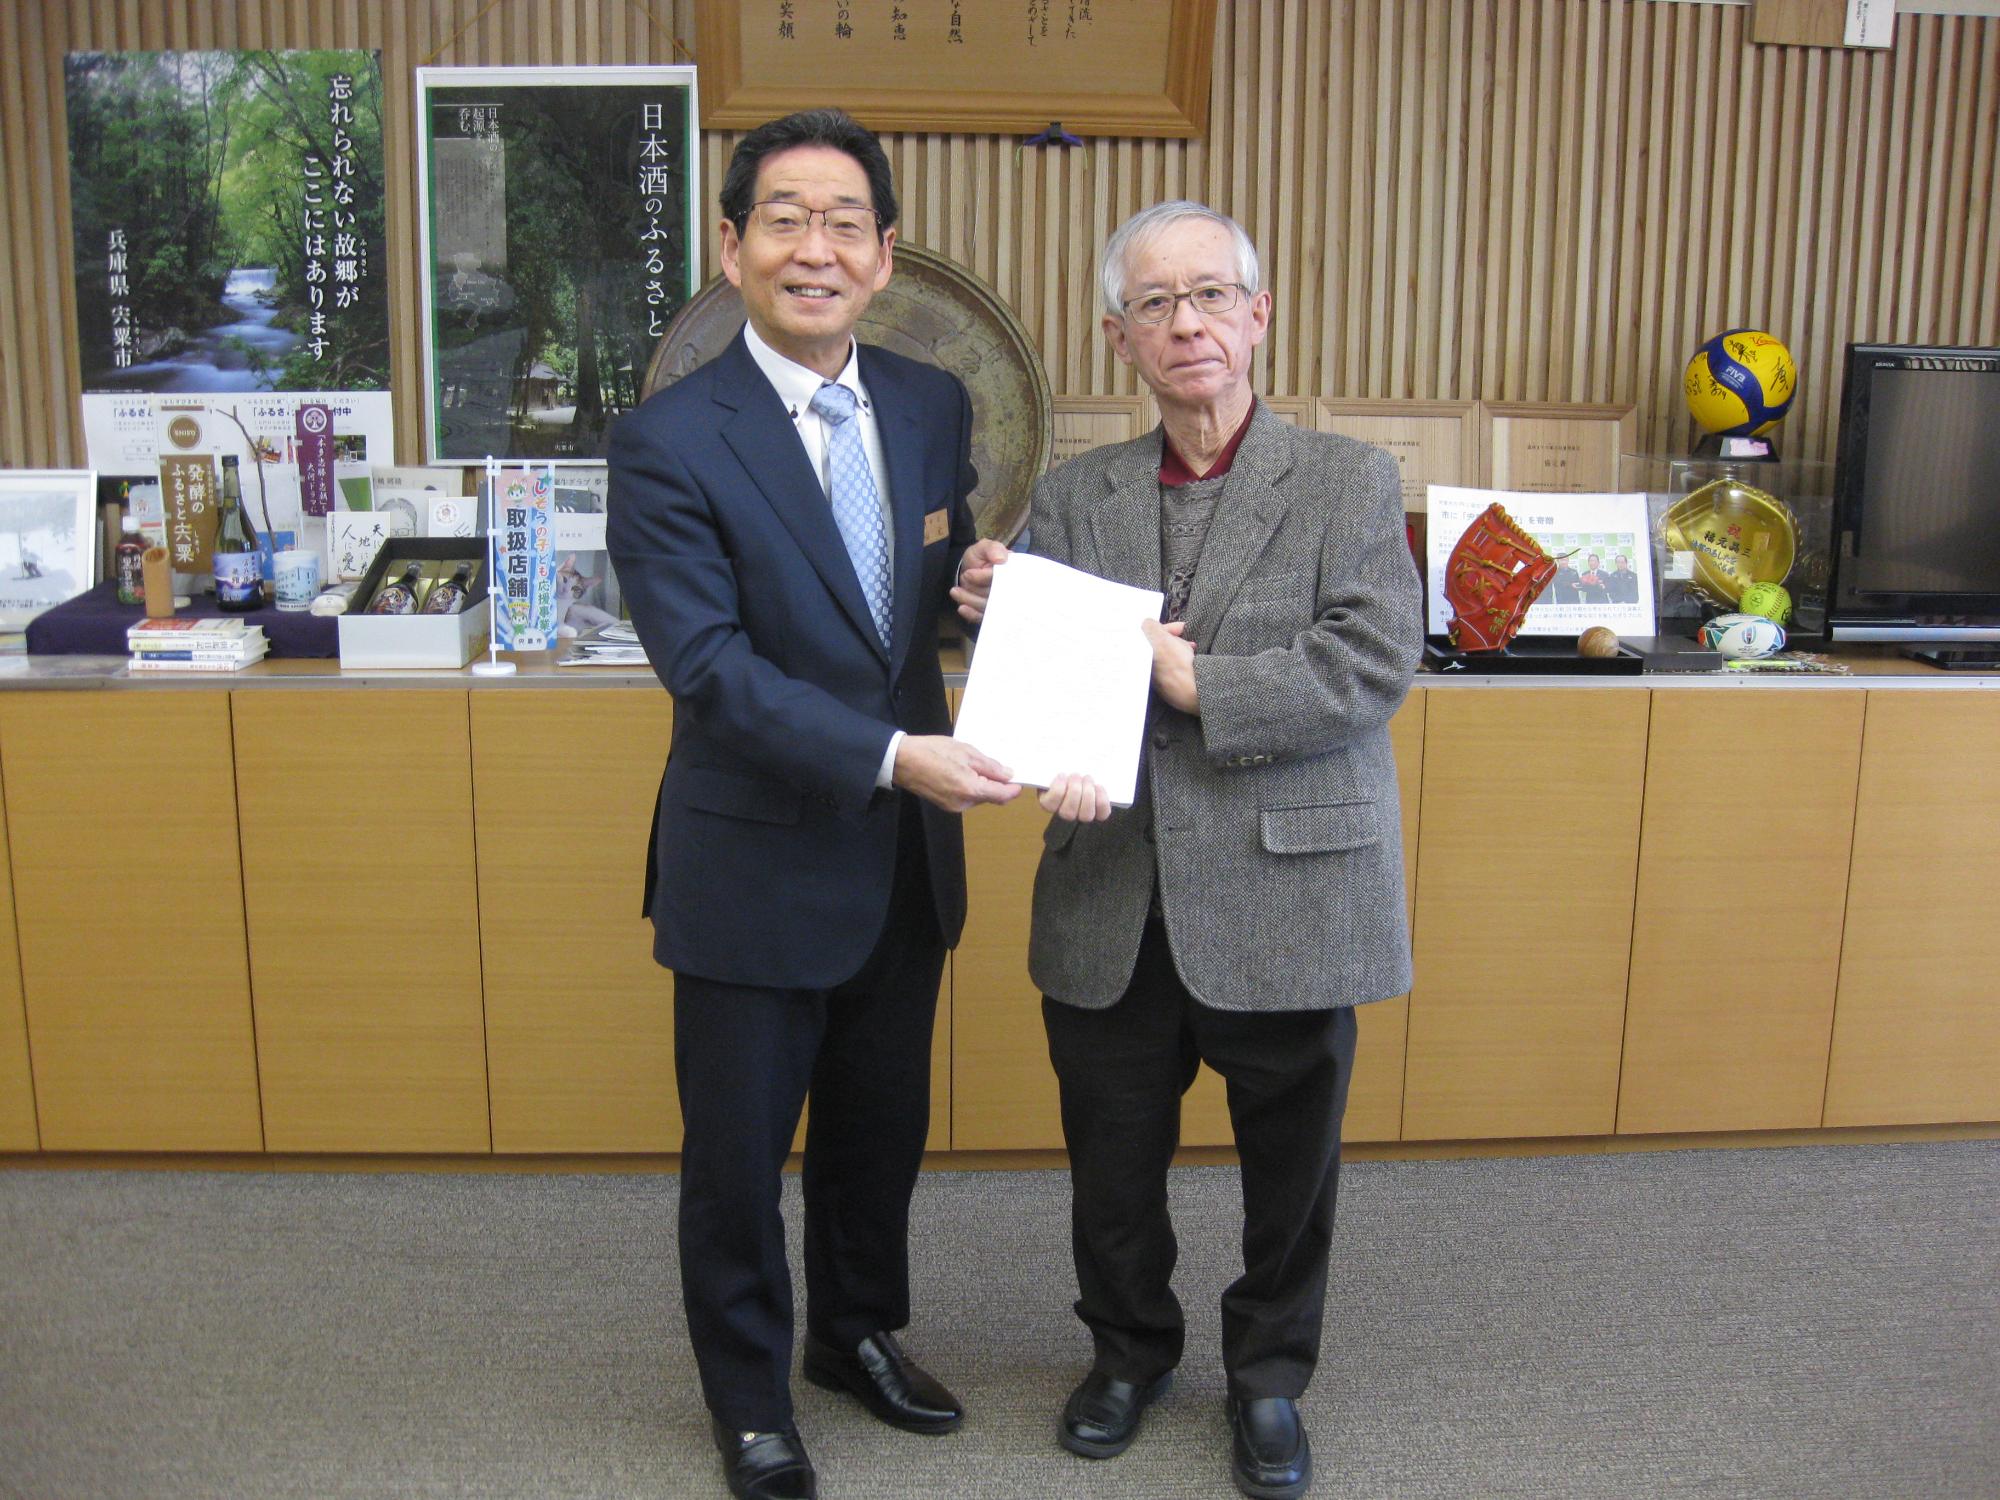 福元市長と稲用委員長が答申書を両側から手にもっている写真